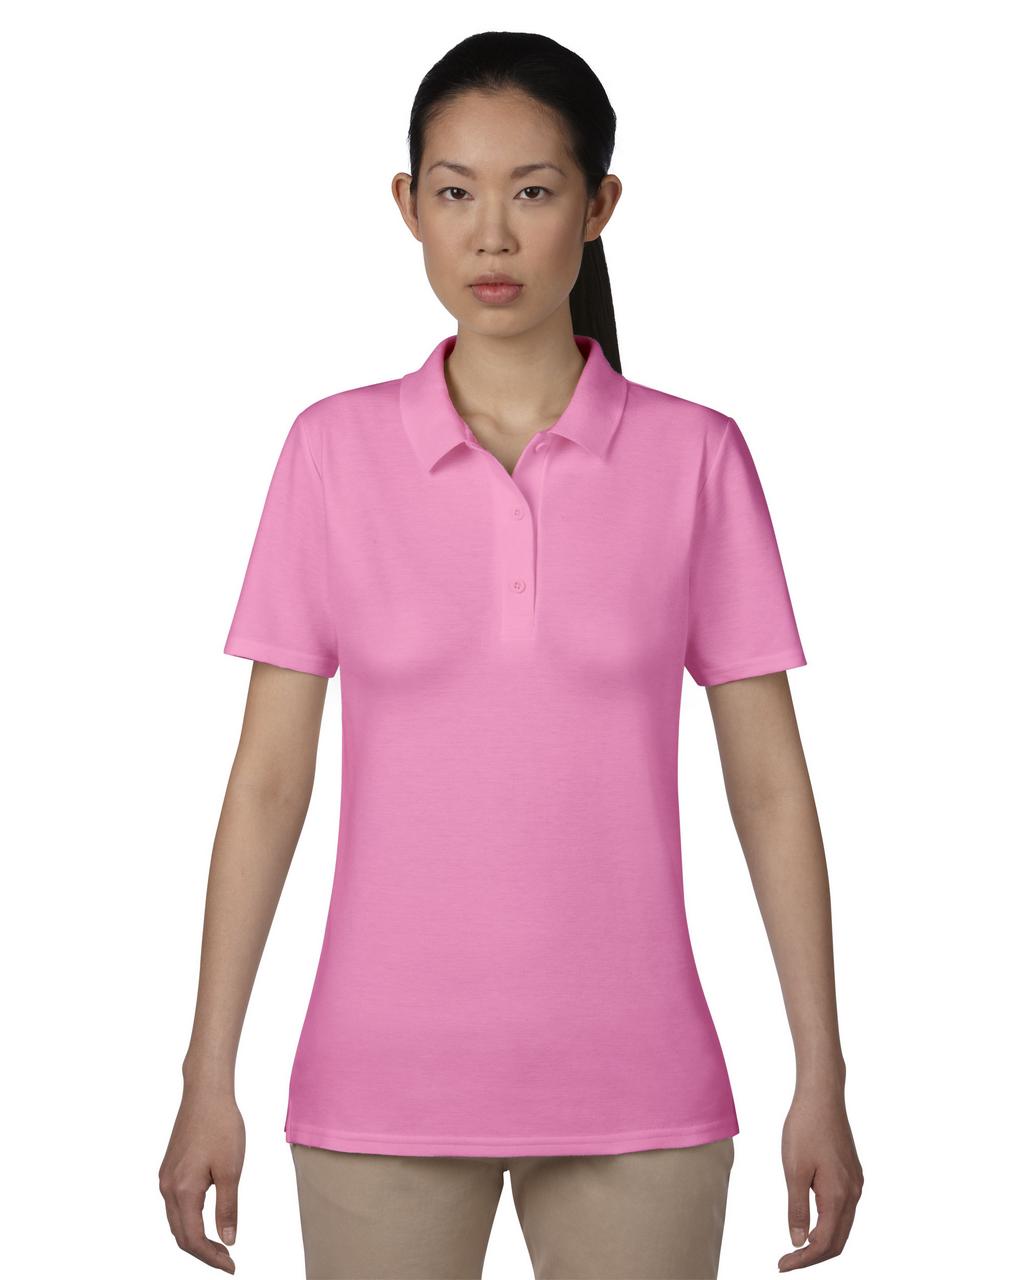 Ženska polo majica s tiskom (opcija) 